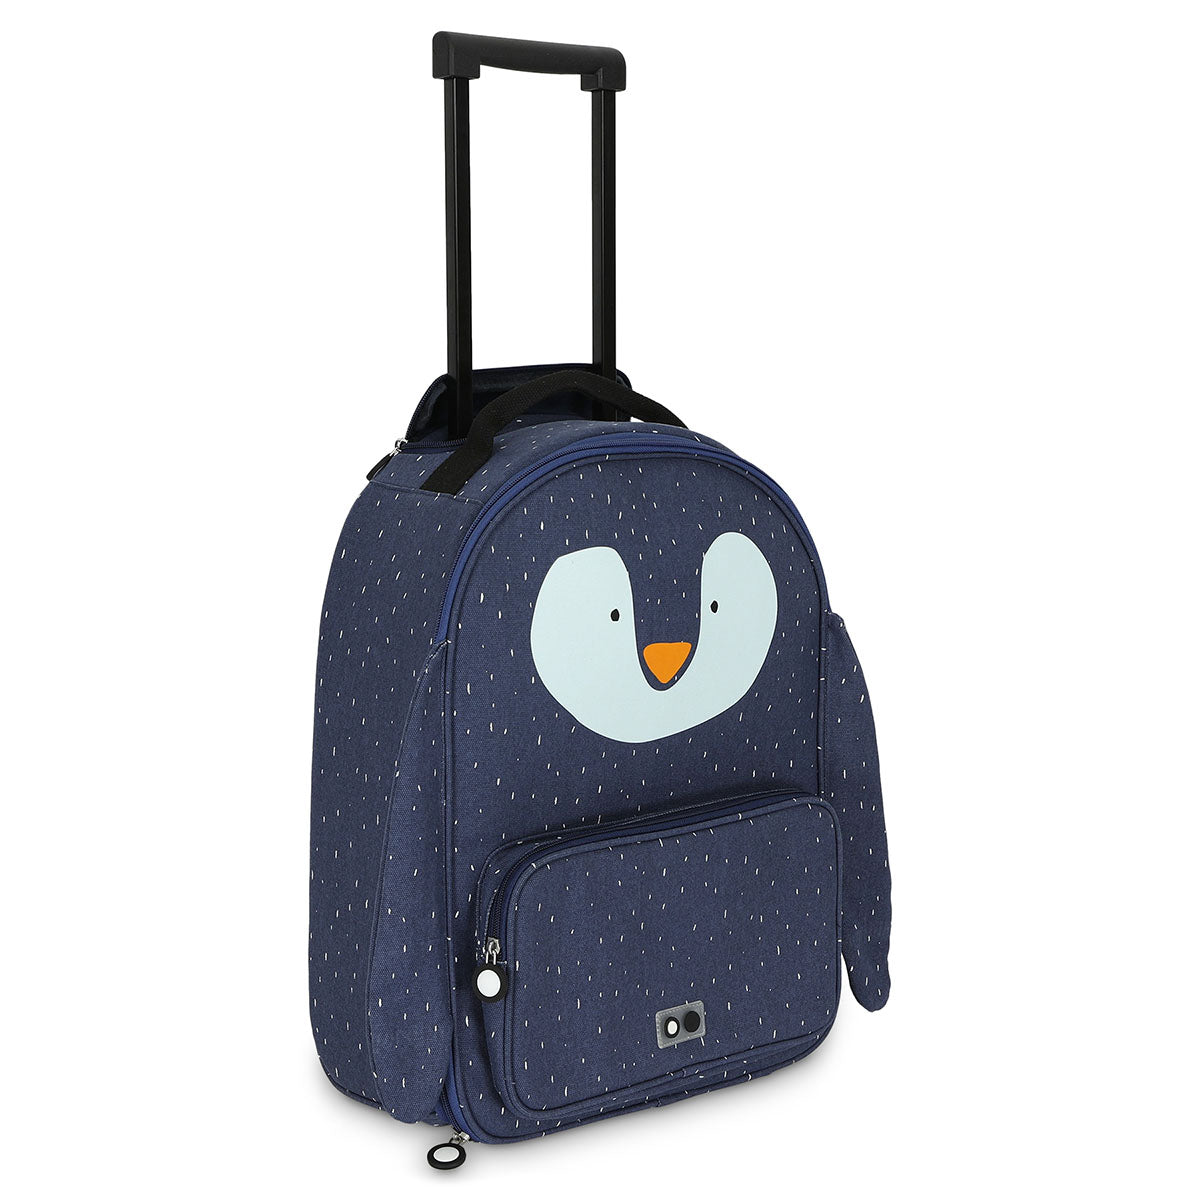 Ik ga op reis en ik neem mee... De Trixie Mr. Penguin reistrolley! Deze blauwe trolley heeft een pinguïn op de voorkant en is precies op maat gemaakt voor de avonturen van je kindje. VanZus.